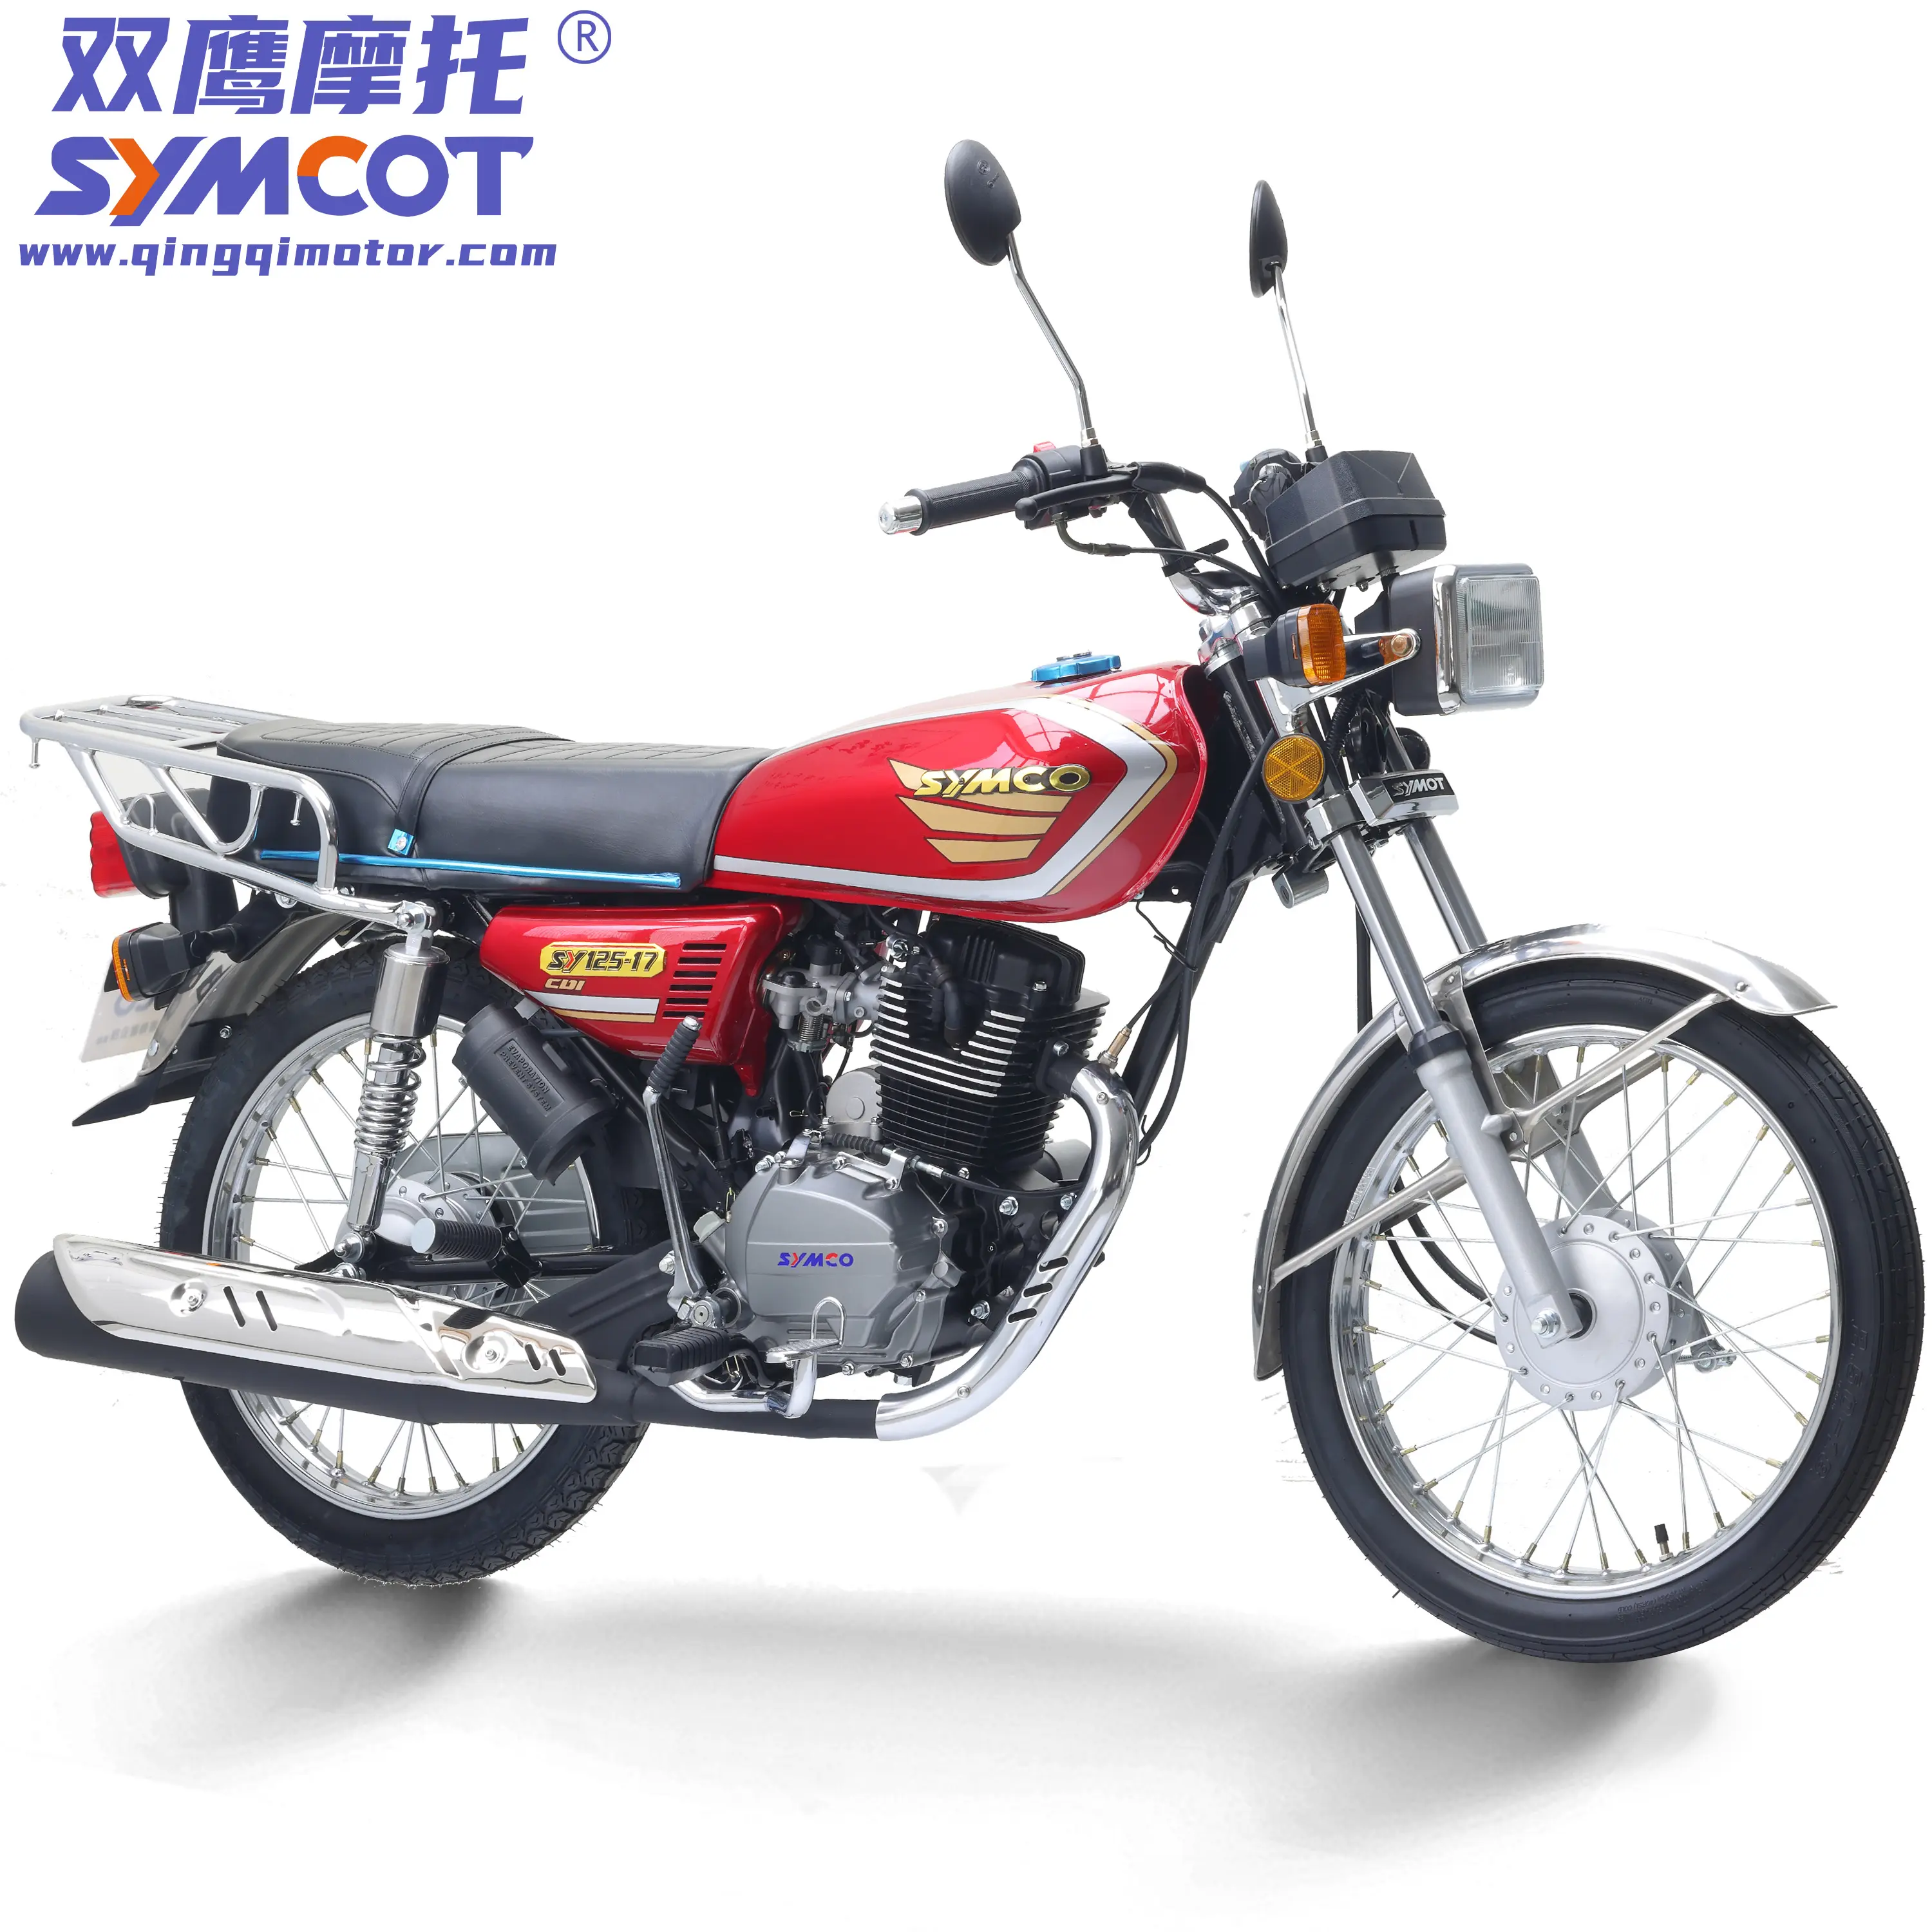 Barato china motocicleta g125 g150 cc175 economia rua motocicleta modelo com alta qualidade pronto para enviar